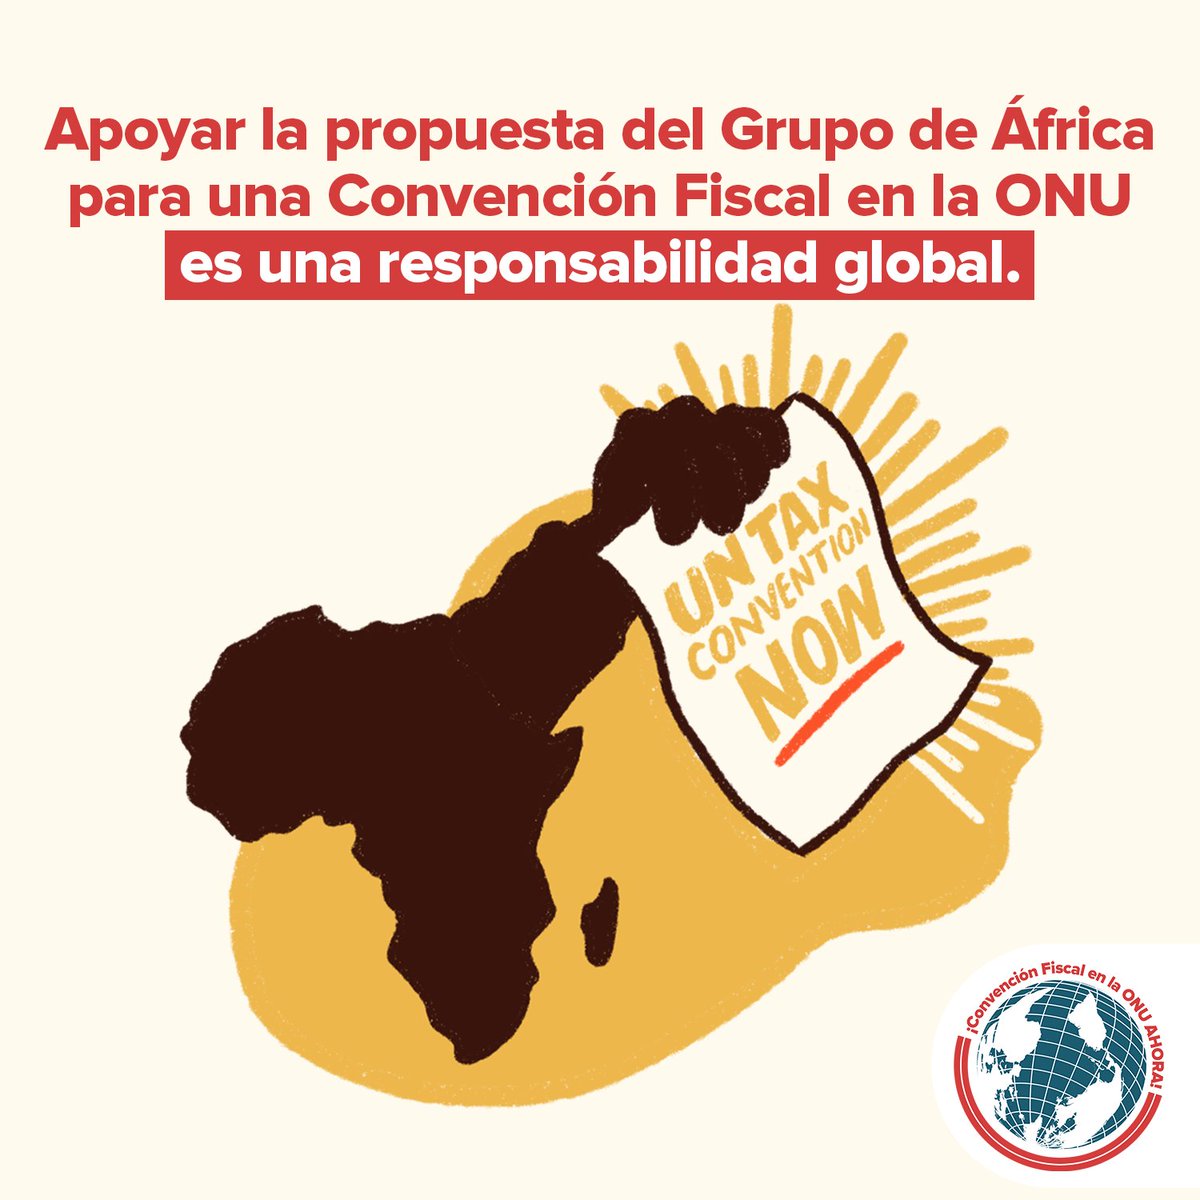 📢 Apoyar la propuesta del #GrupoÁfrica para una #ConvenciónFiscalONU es una responsabilidad global. ¡Expresamos nuestro respaldo en el Segundo Comité de la Asamblea General de la @ONU! #GrupoÁfrica #UNTaxConvention #TaxJustice #JusticiaFiscal